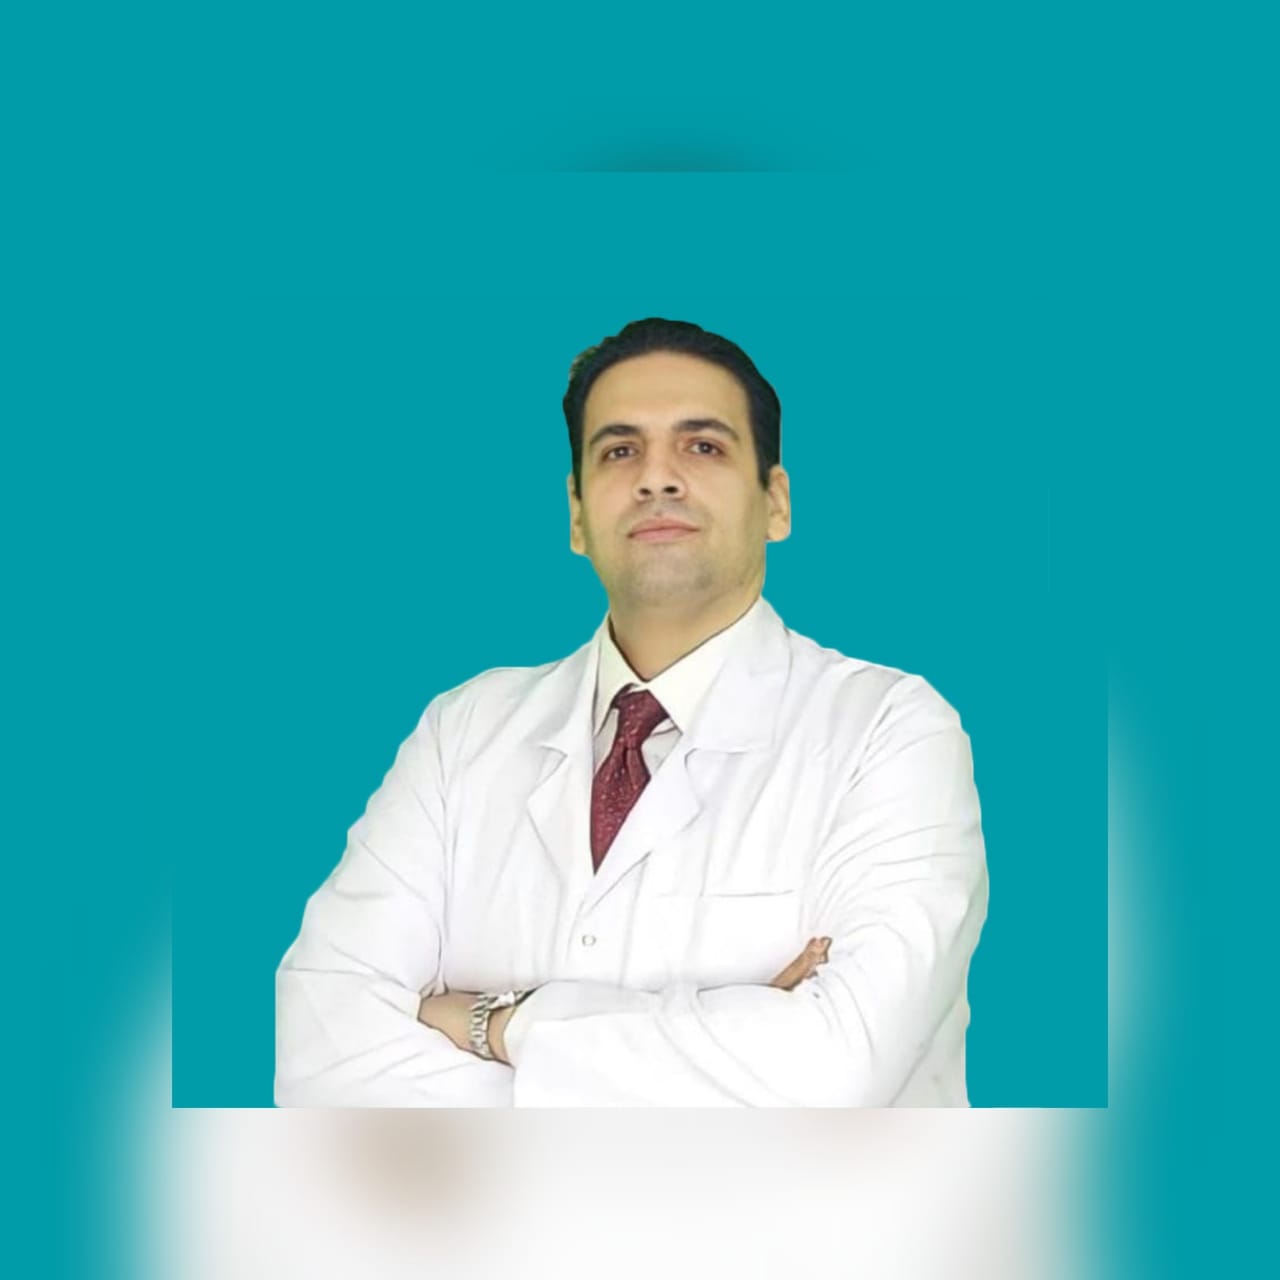 Dr. Mohamed Abdel-Salam